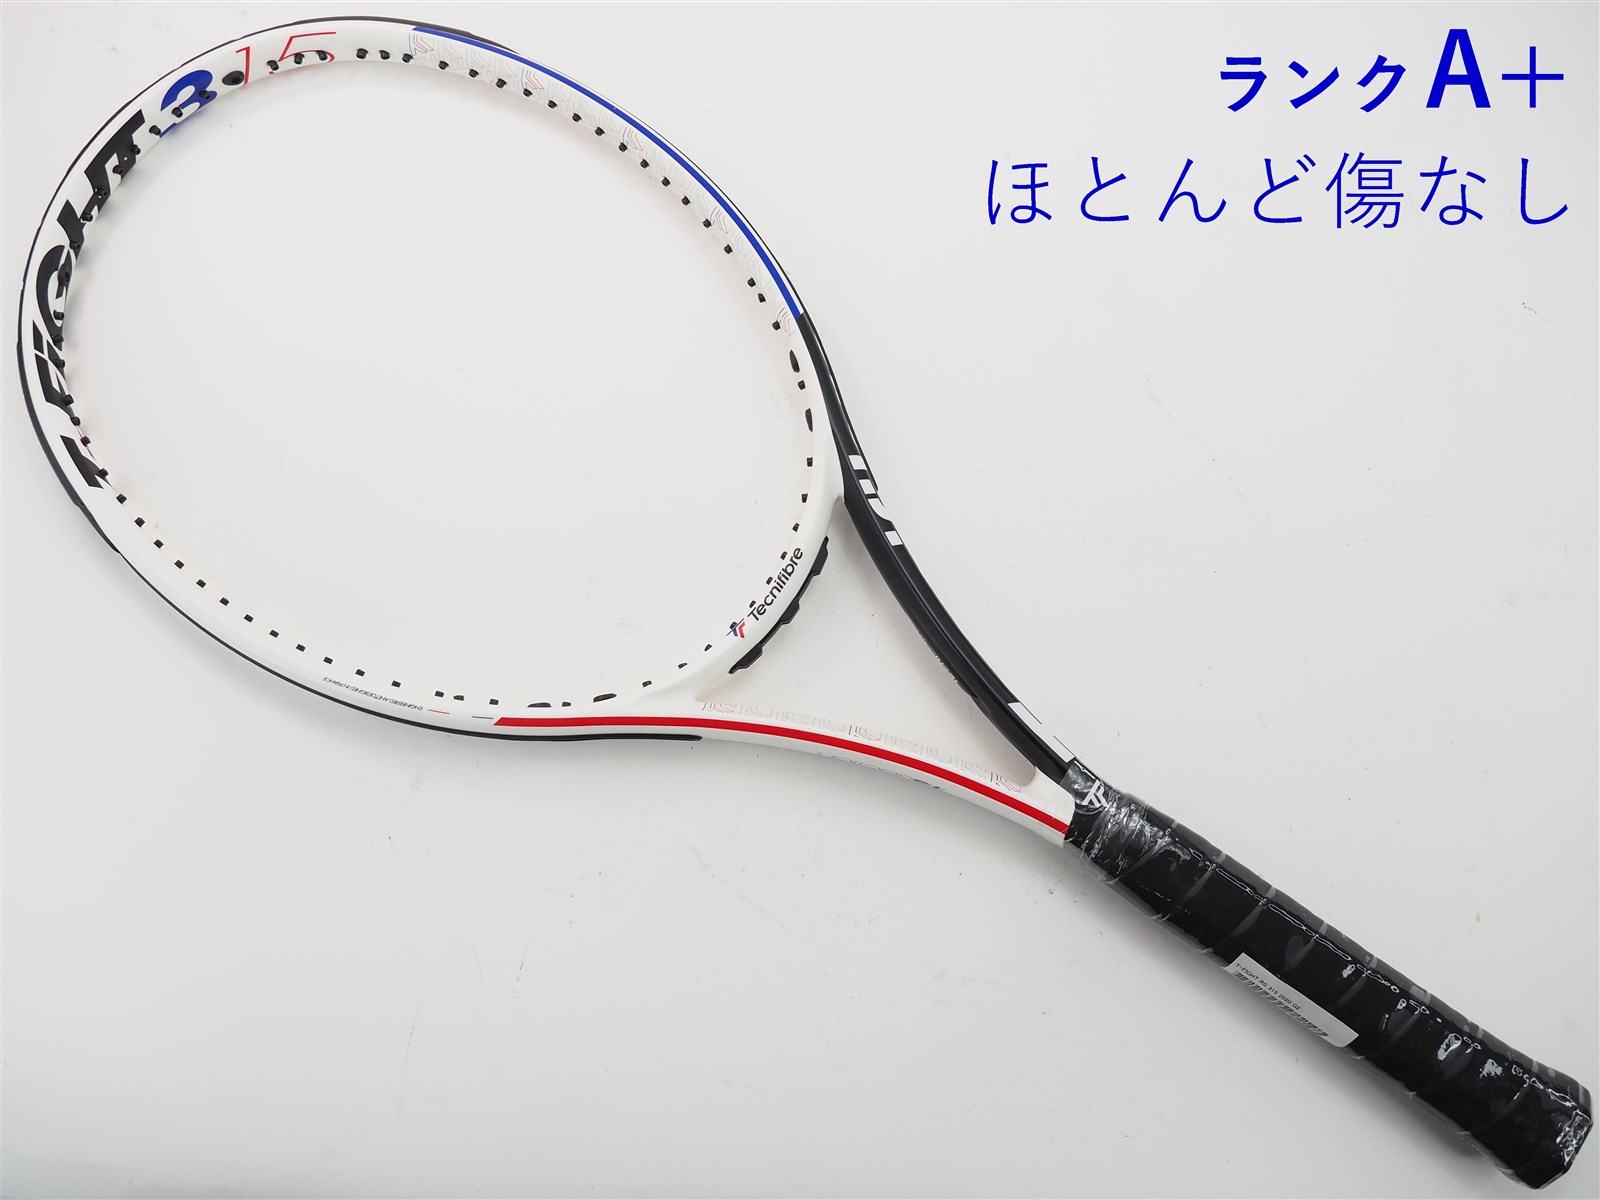 テクニファイバー Tecnifibre T-FIGHT 315 - テニス